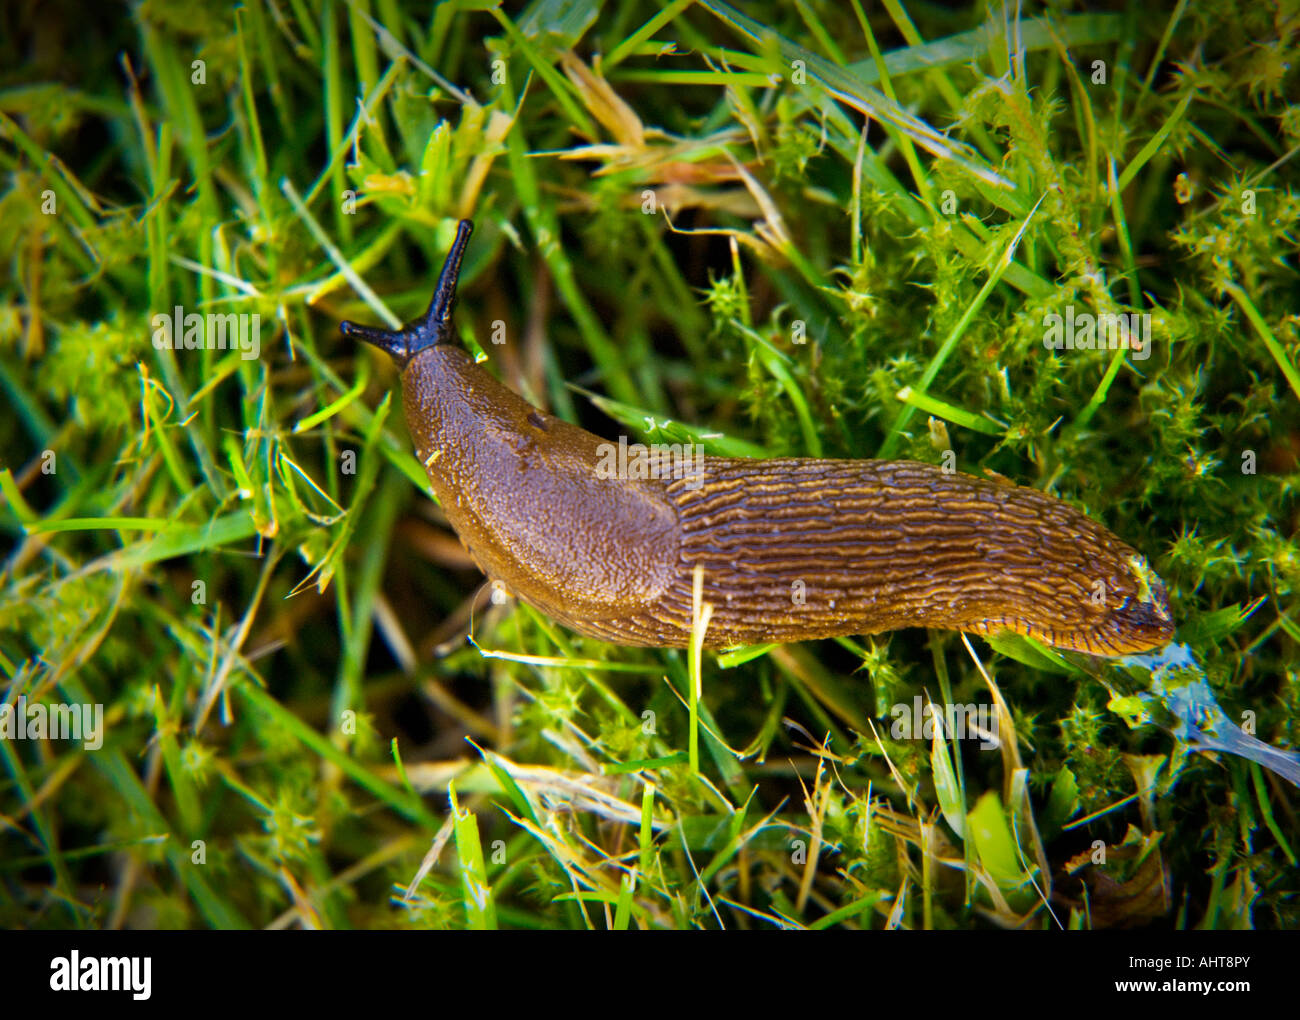 Spanish slug, ARION LUSITANICUS, also known as killer slug. Stock Photo